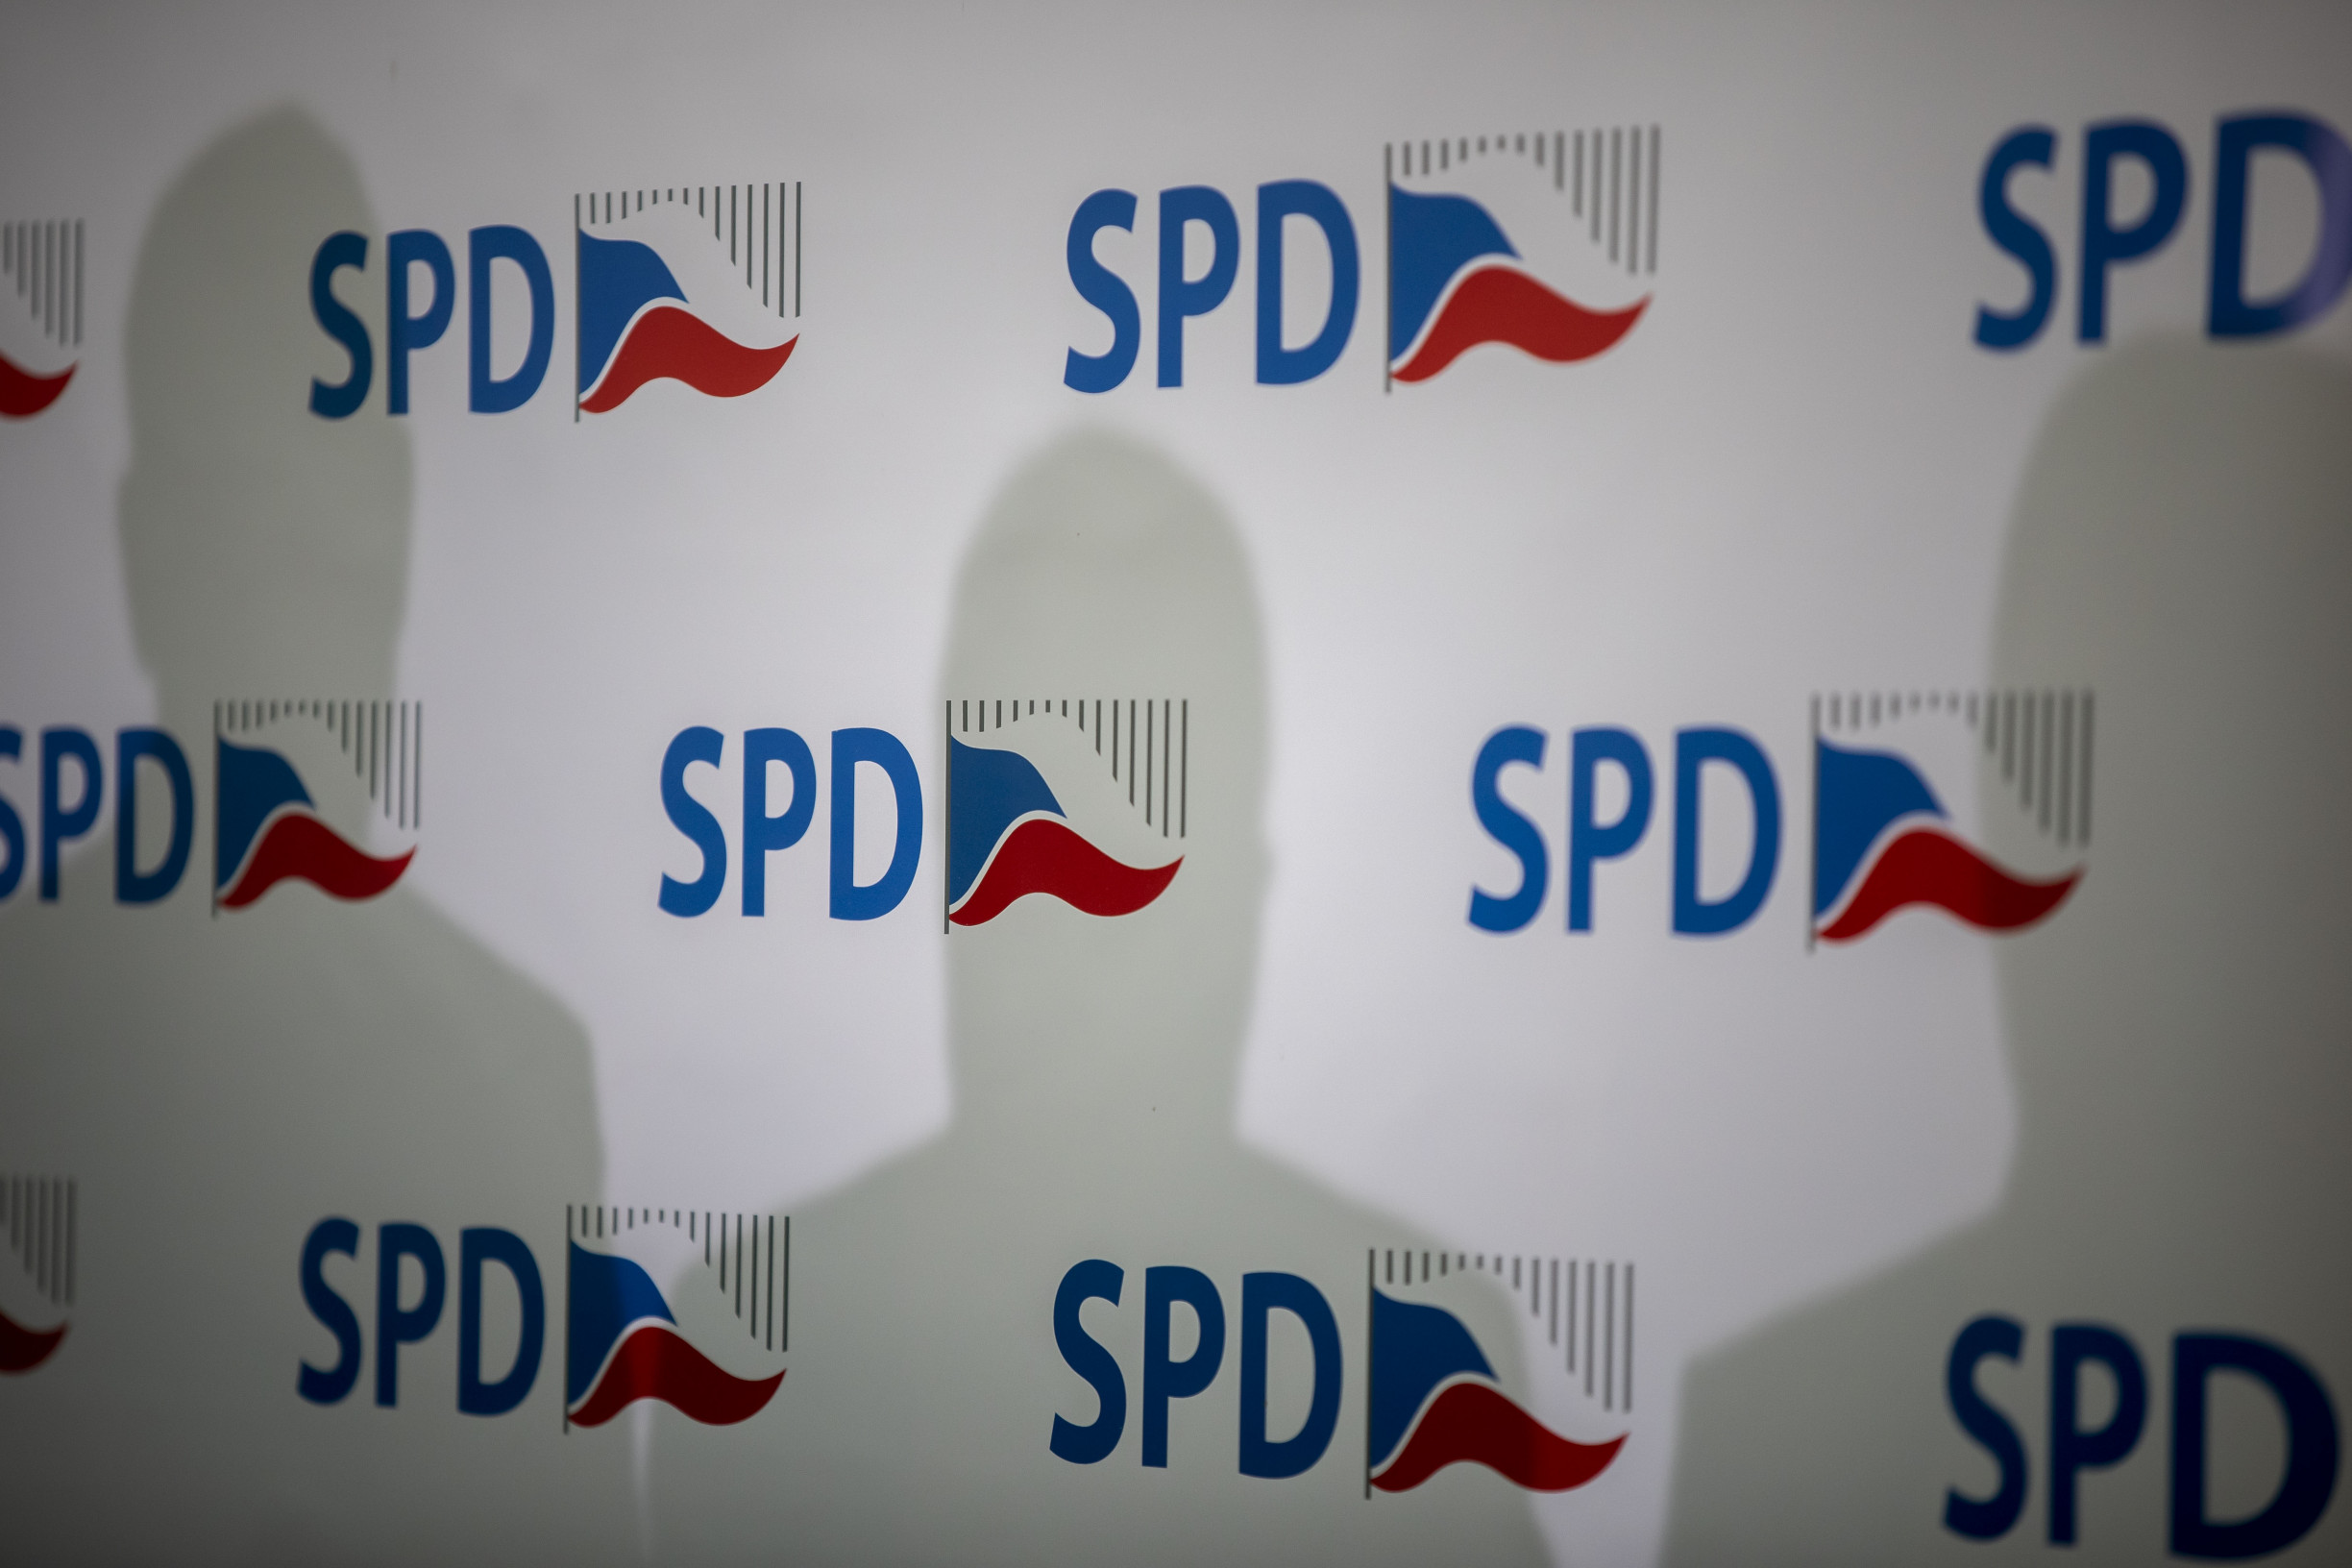 SPD a Trikolóra chtějí na radnice společně. V Olomouci je kandidátka hotová, jedná se v Praze, Brně i Ostravě